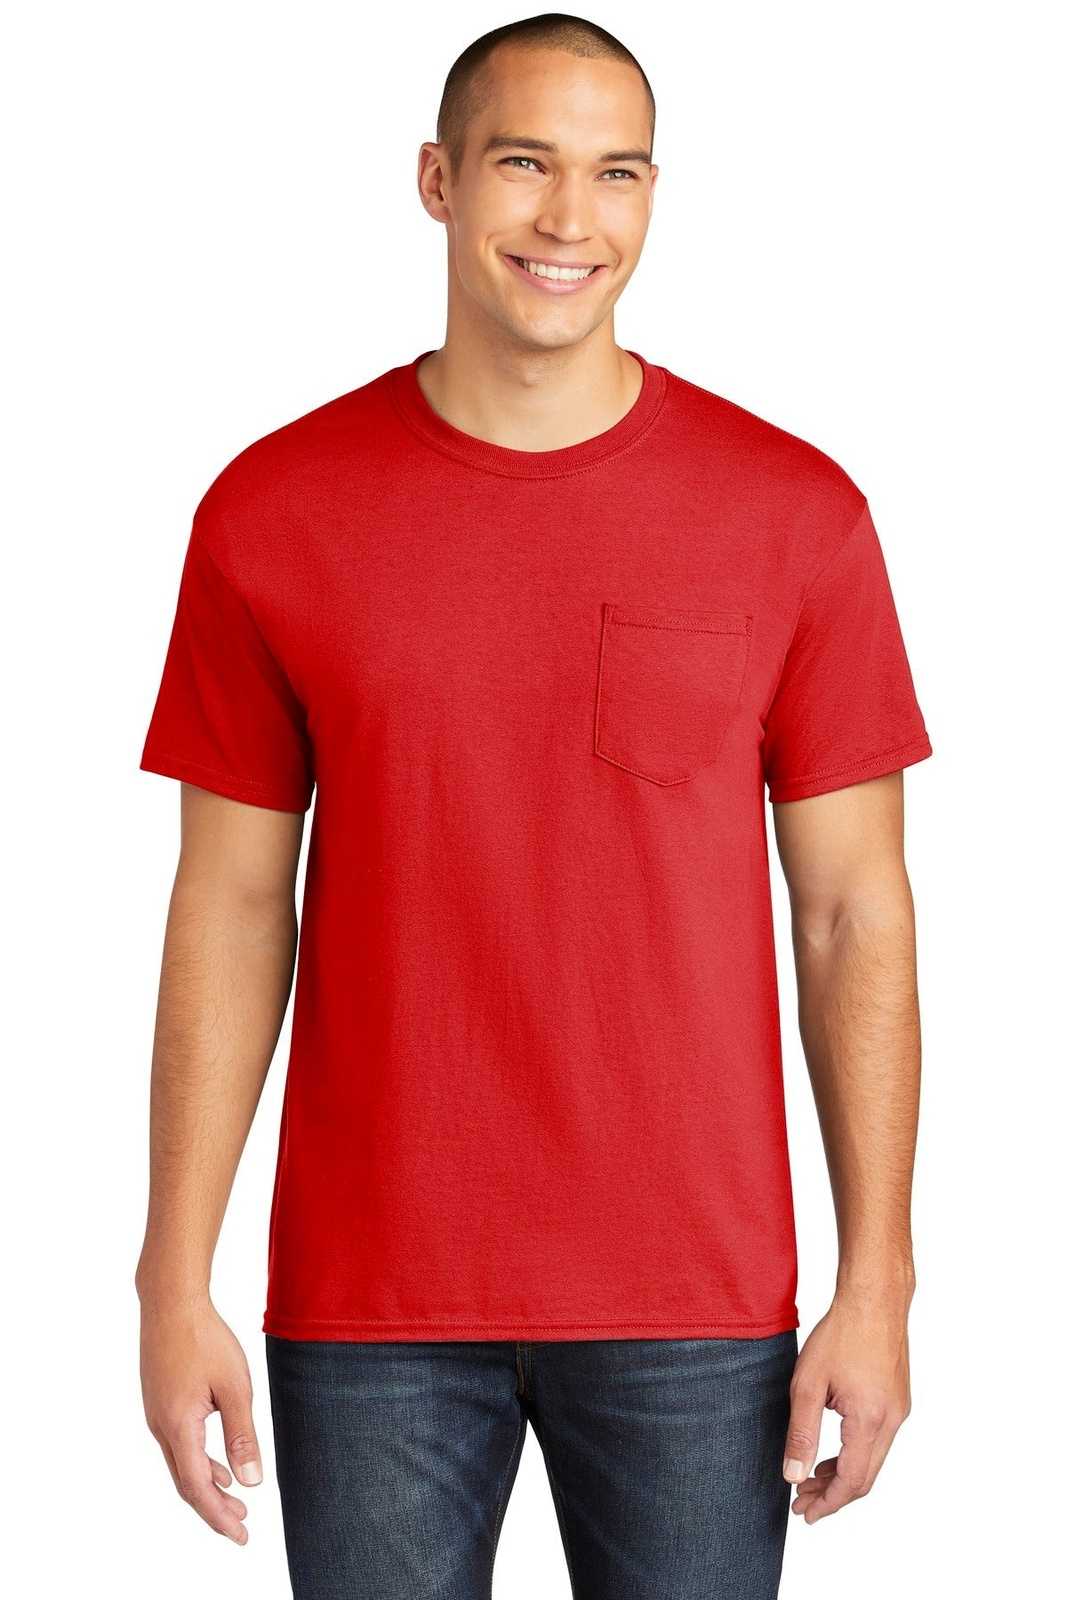 Gildan 5300 Heavy Cotton 100% Cotton Pocket T-Shirt - Red - HIT a Double